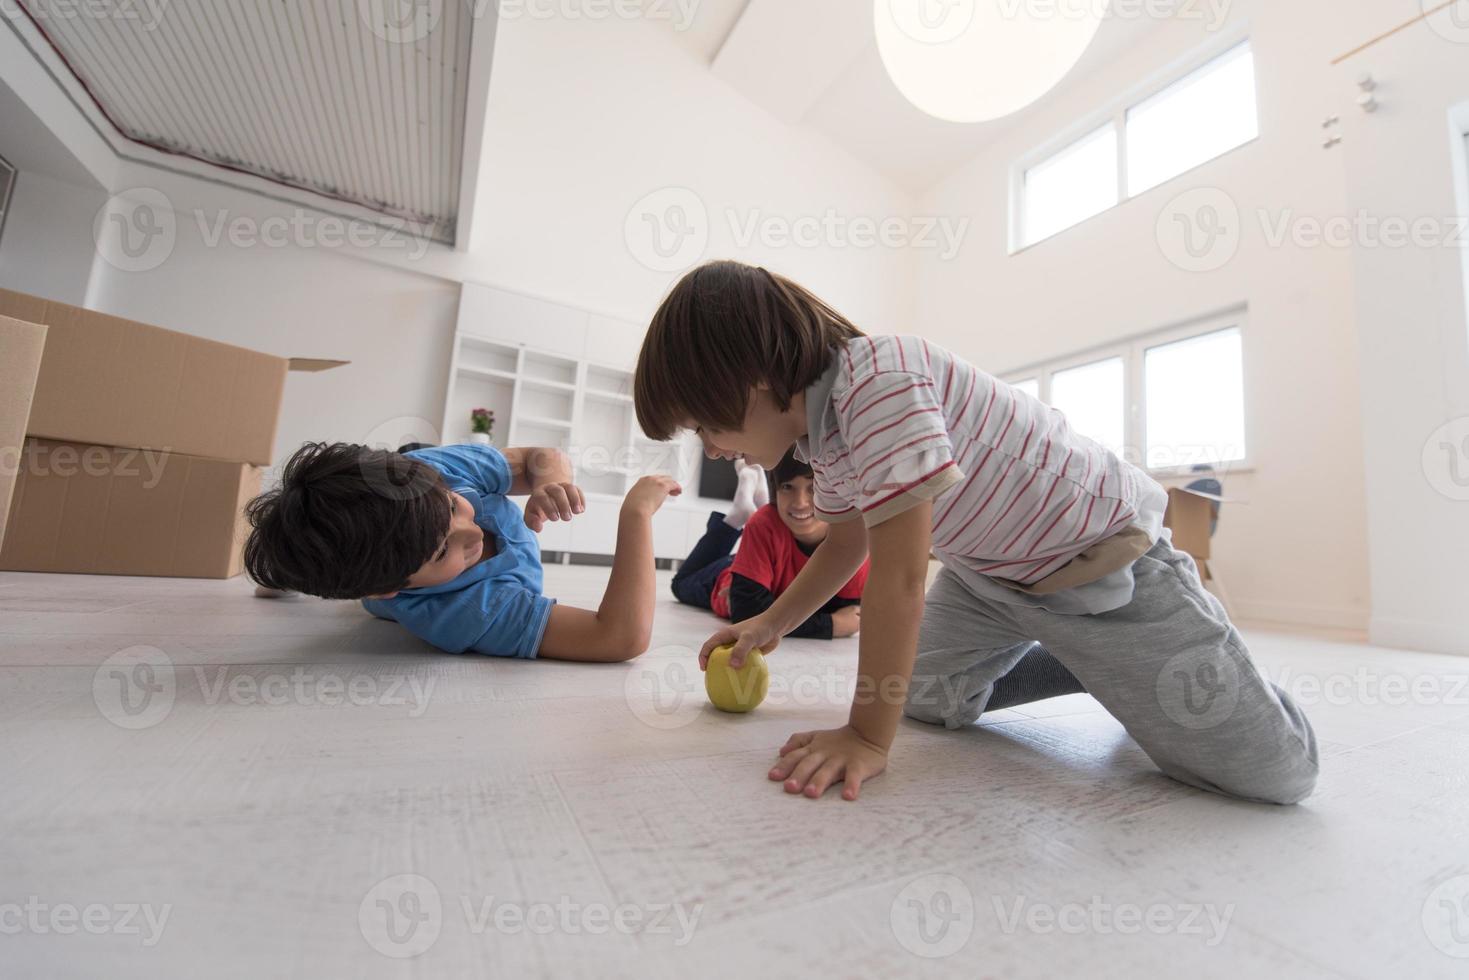 meninos se divertindo com uma maçã no chão foto